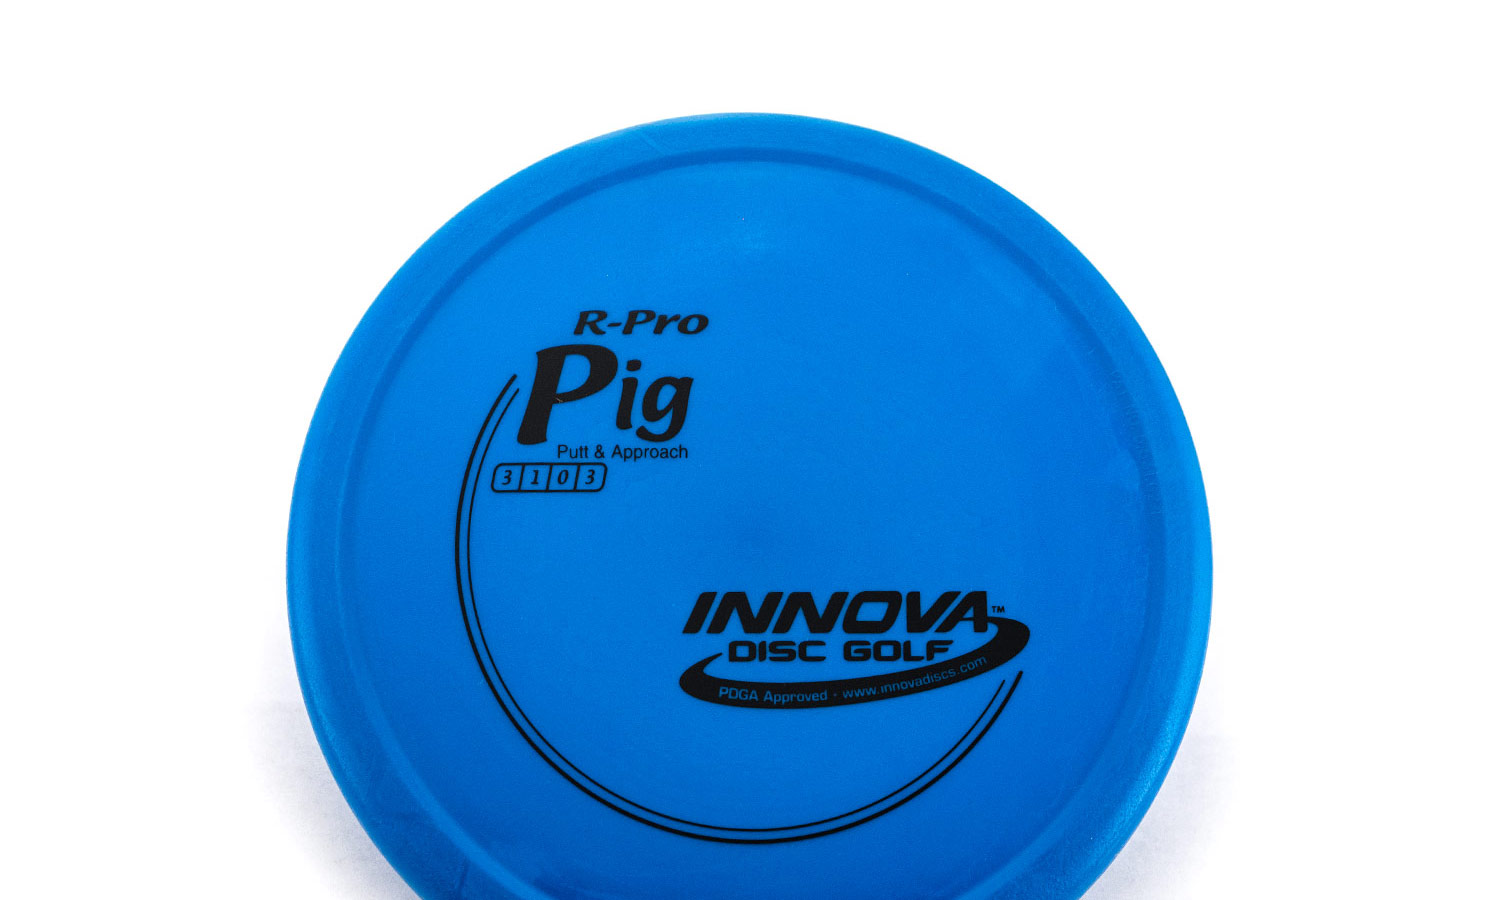 Pig - Innova Disc Golf